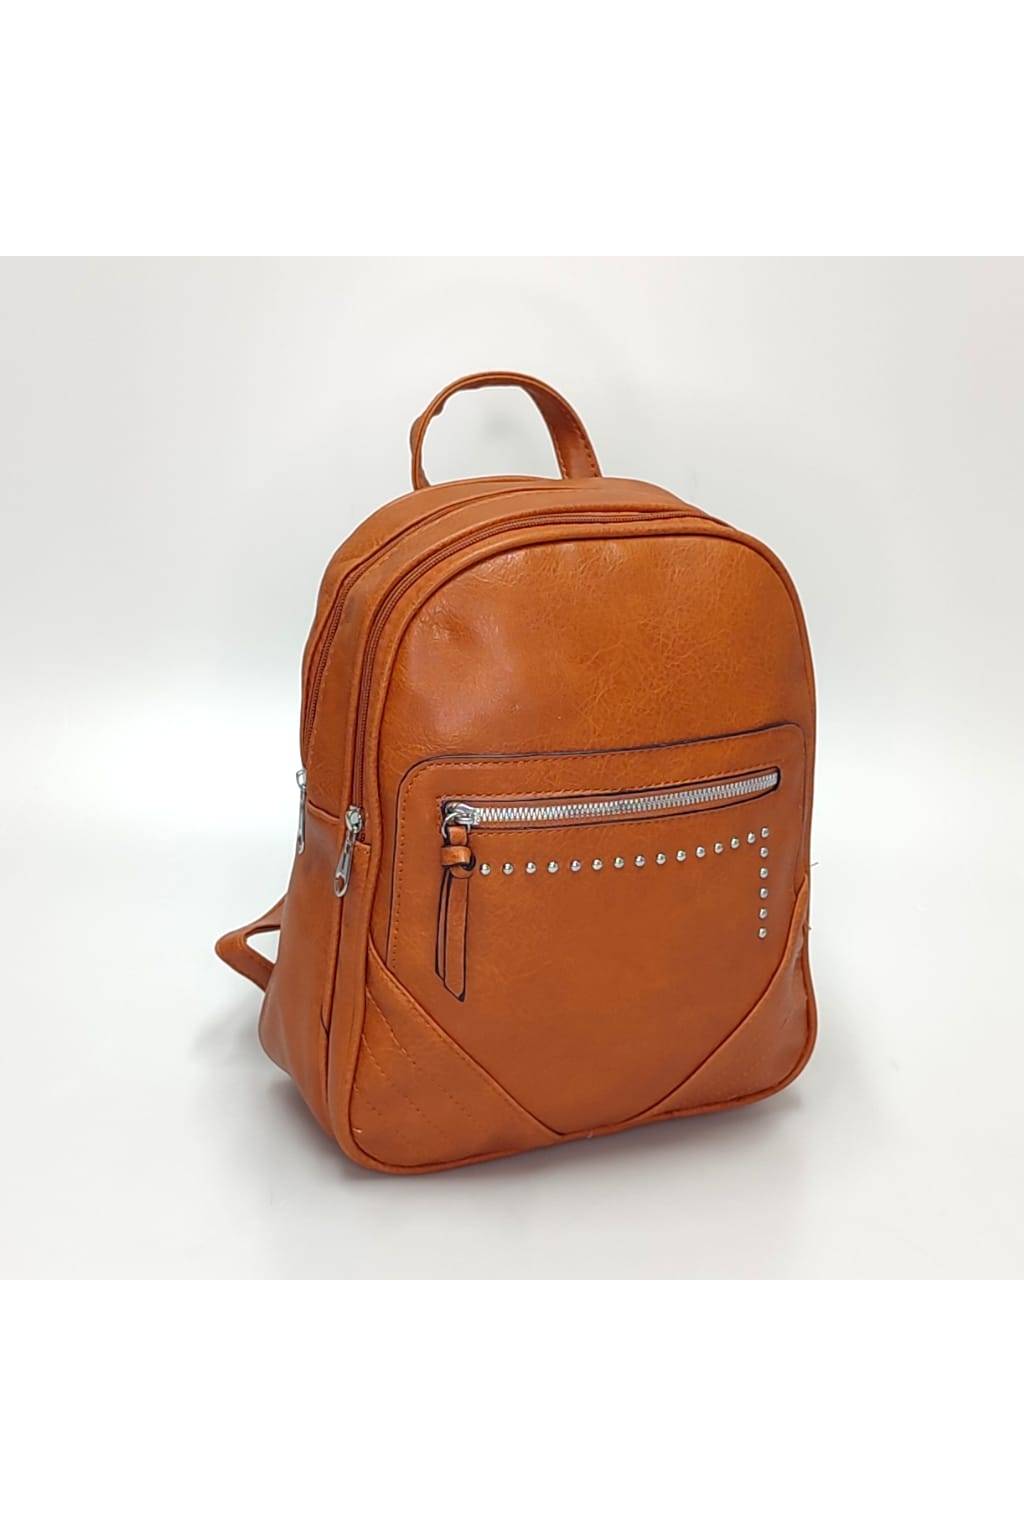 Dámsky ruksak 6301 tehlový www.kabelky vypredaj (1)